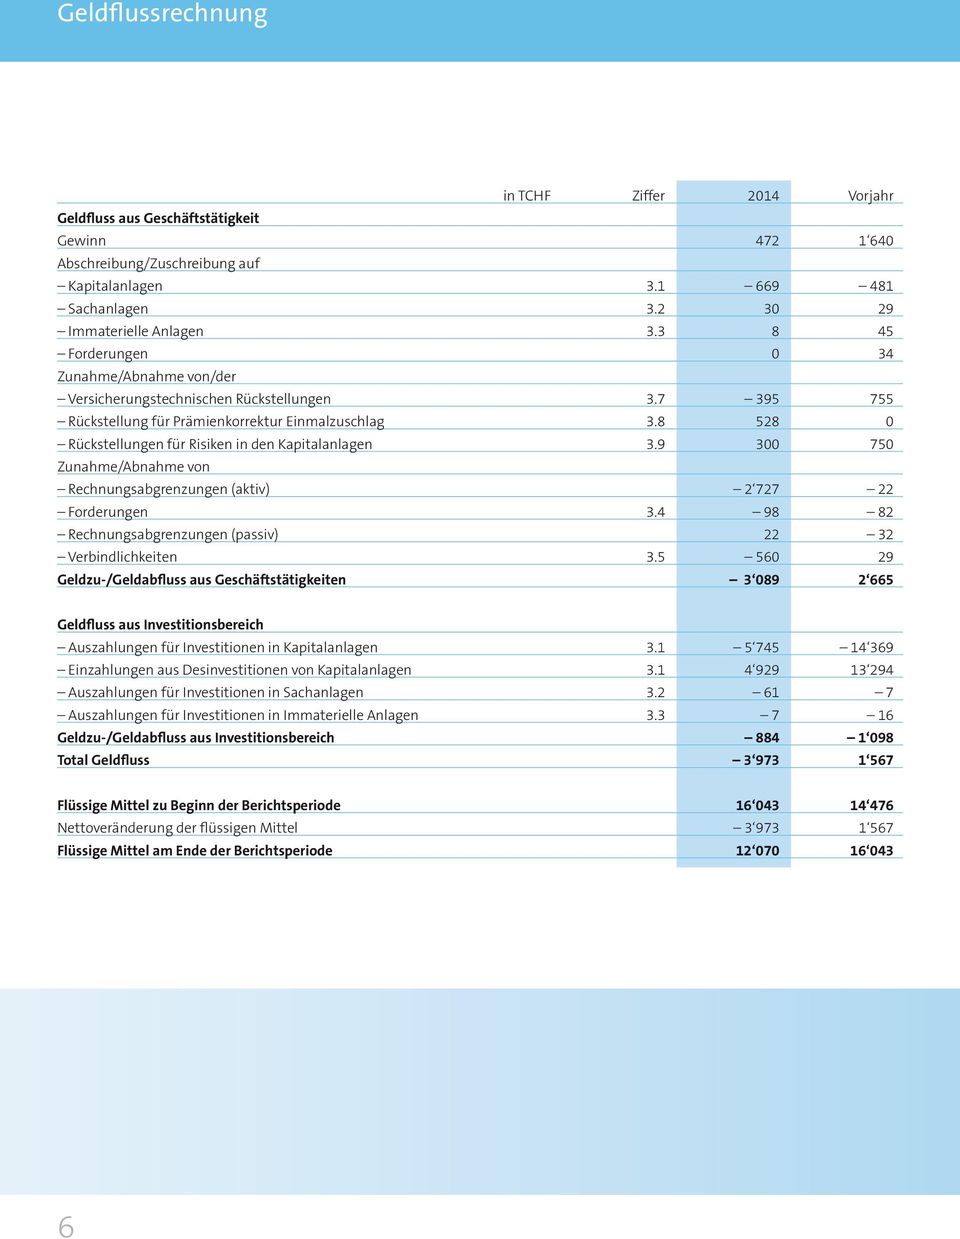 8 528 0 Rückstellungen für Risiken in den Kapitalanlagen 3.9 300 750 Zunahme/Abnahme von Rechnungsabgrenzungen (aktiv) 2 727 22 Forderungen 3.